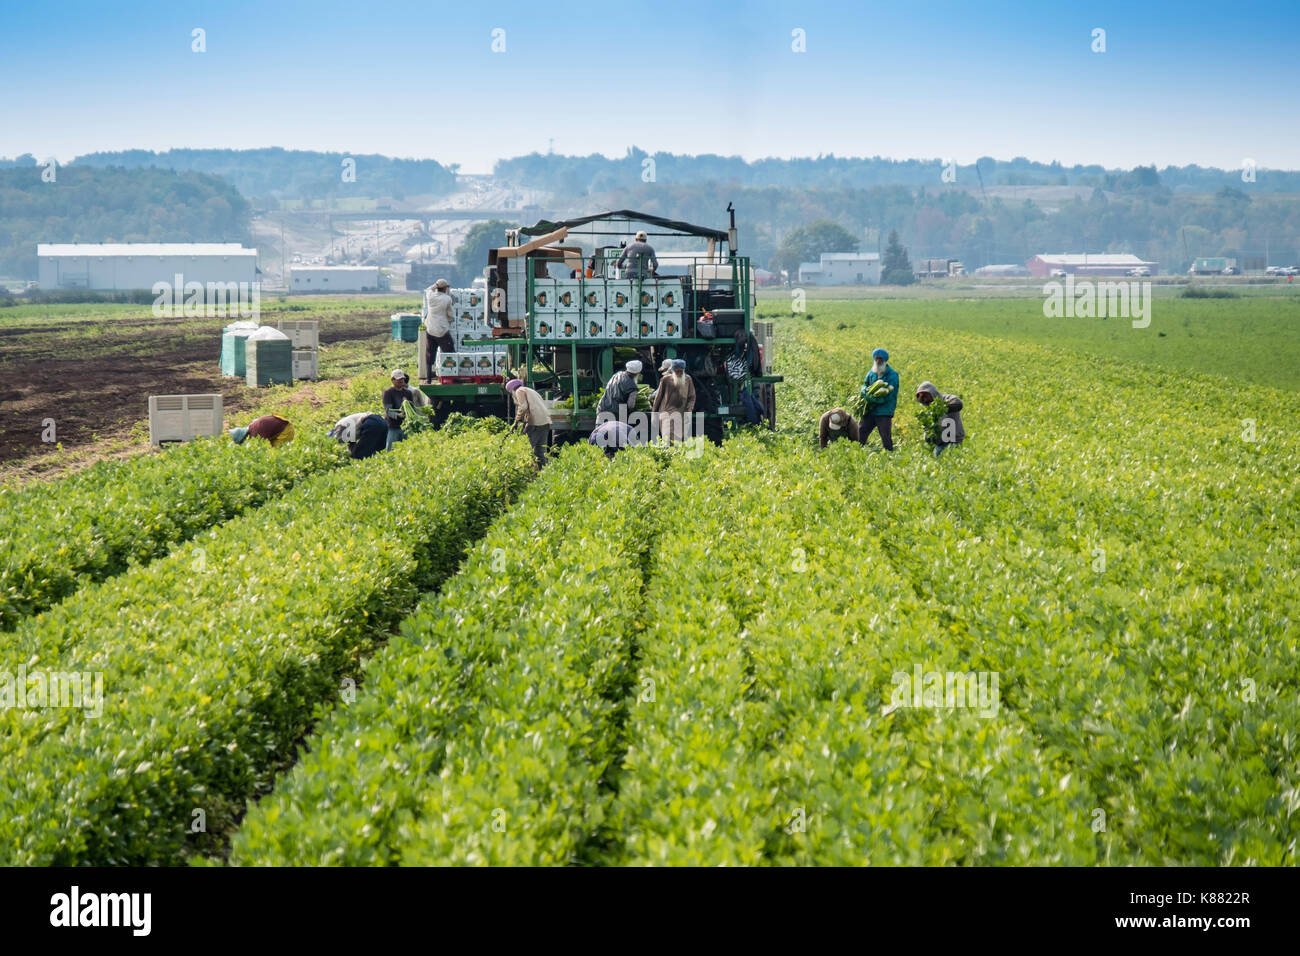 L'agriculture de la récolte de cultures comme l'oignon et le céleri,salade,par les travailleurs migrants près de Toronto,Ontario,Canada, au Holland Marsh. Banque D'Images